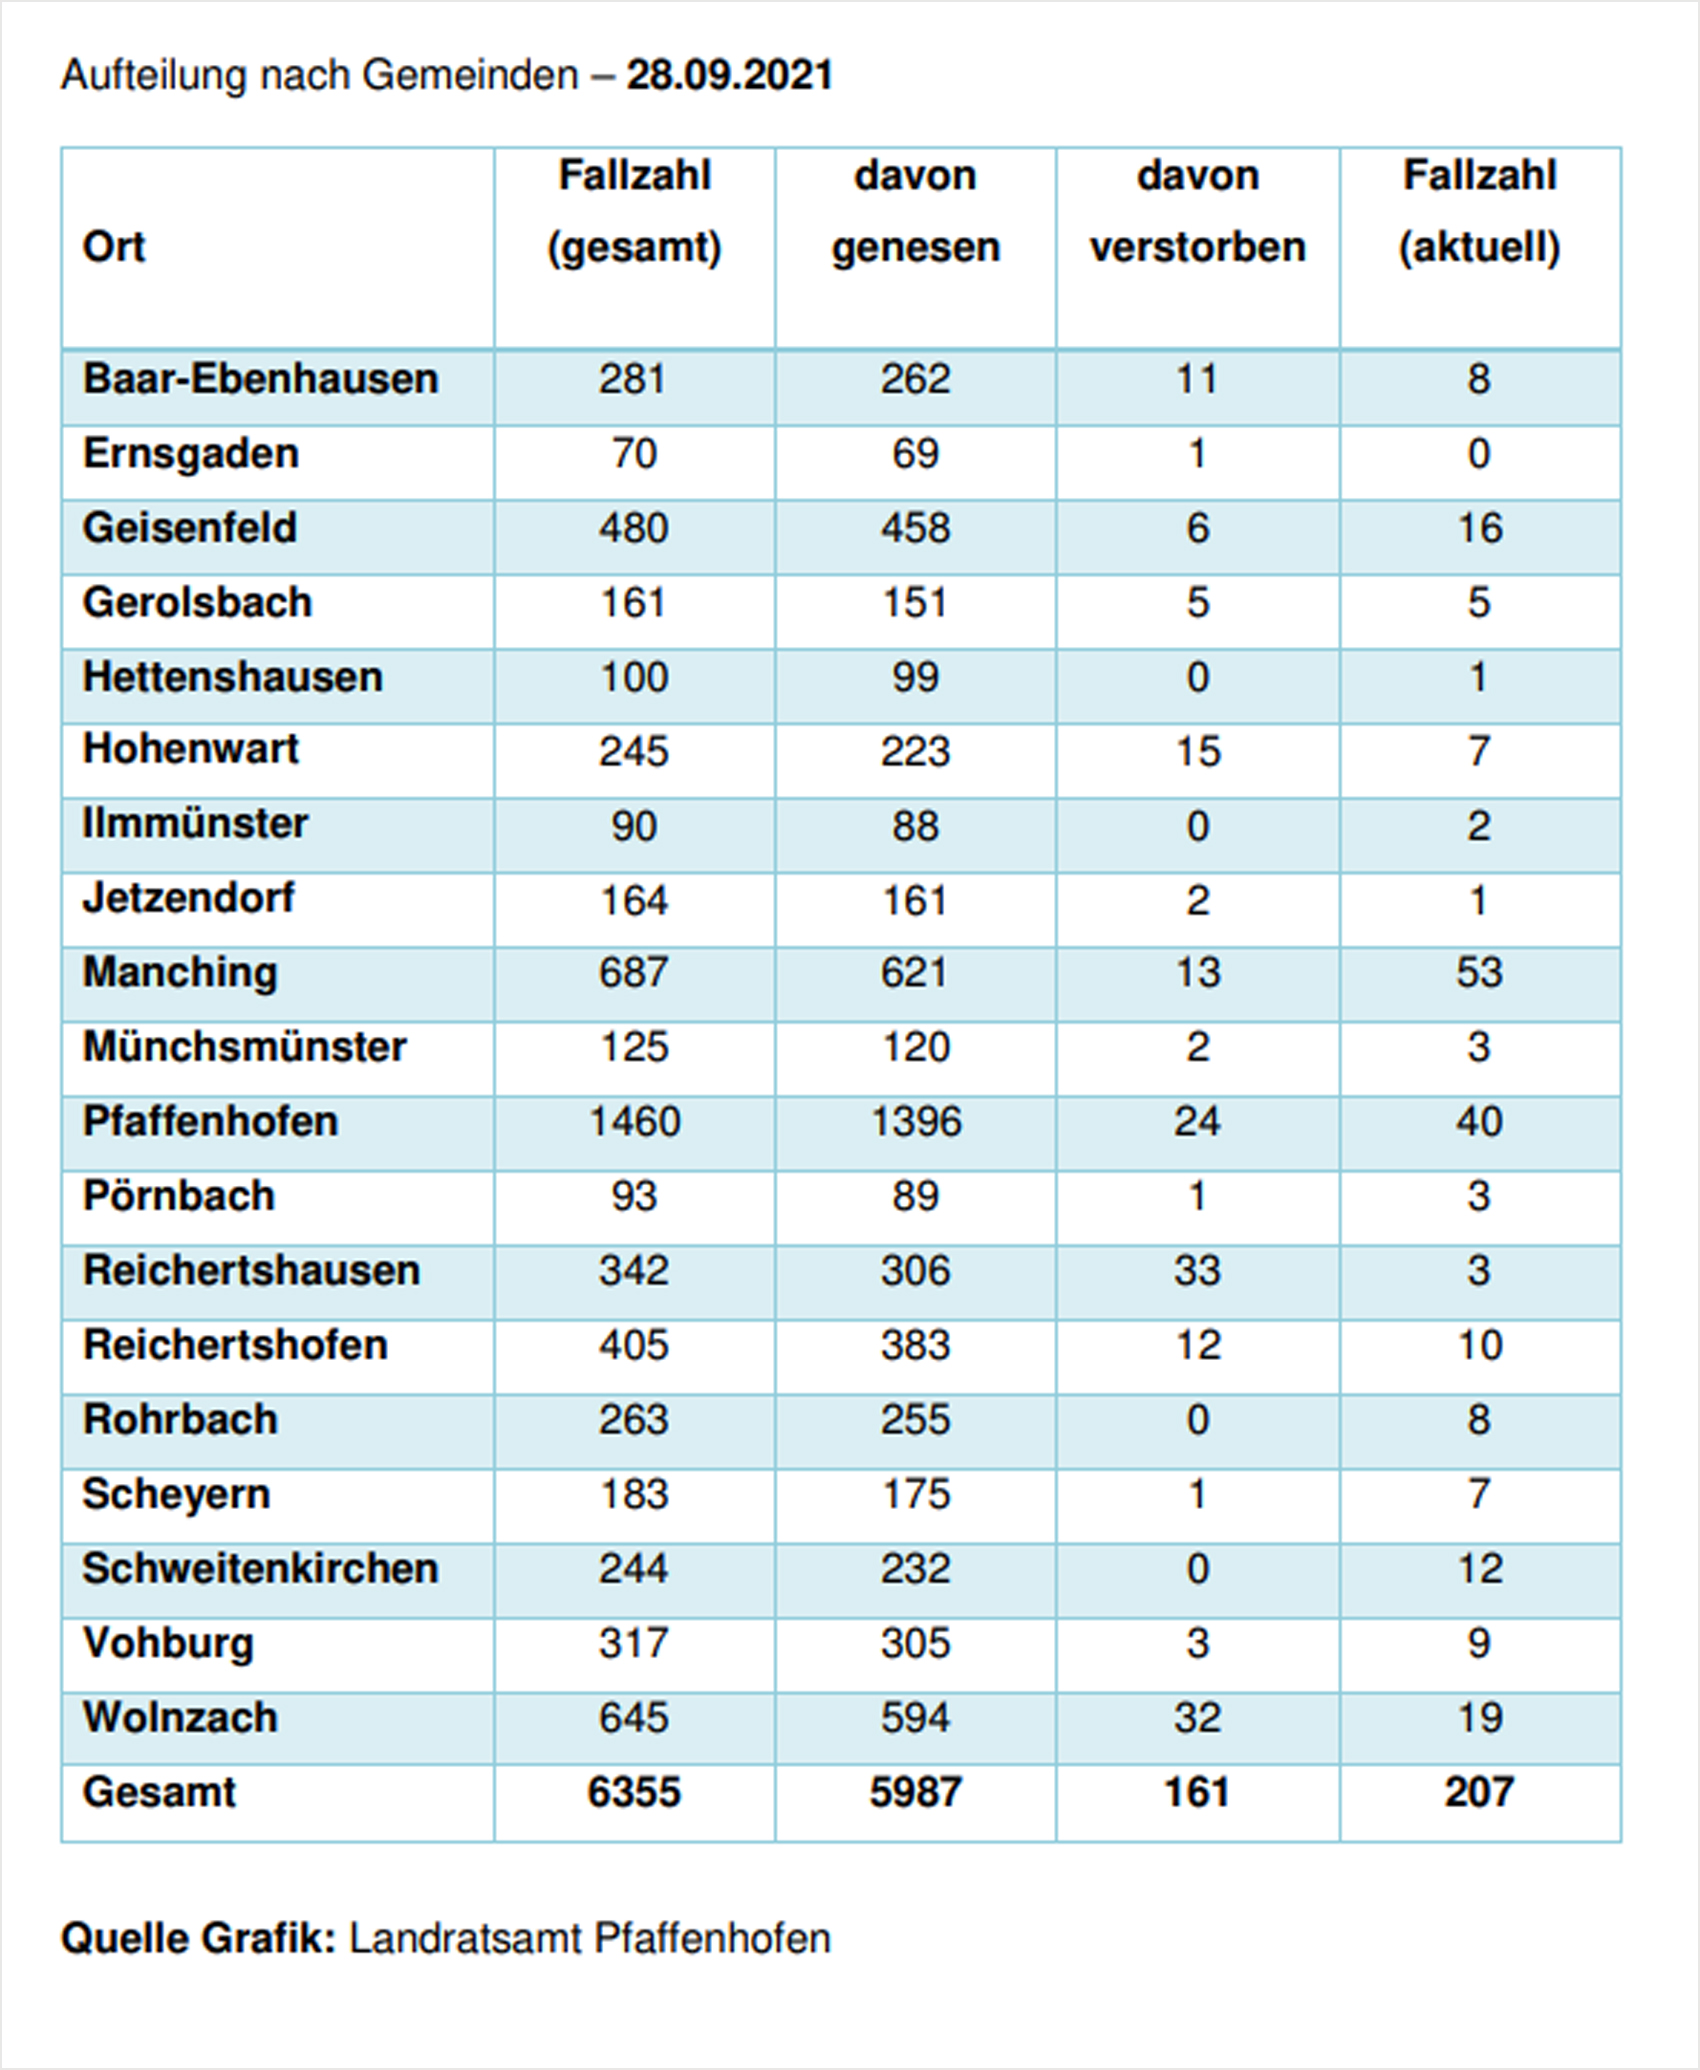 Verteilung der Fallzahlen auf die Landkreisgemeinden - 28.09.2021